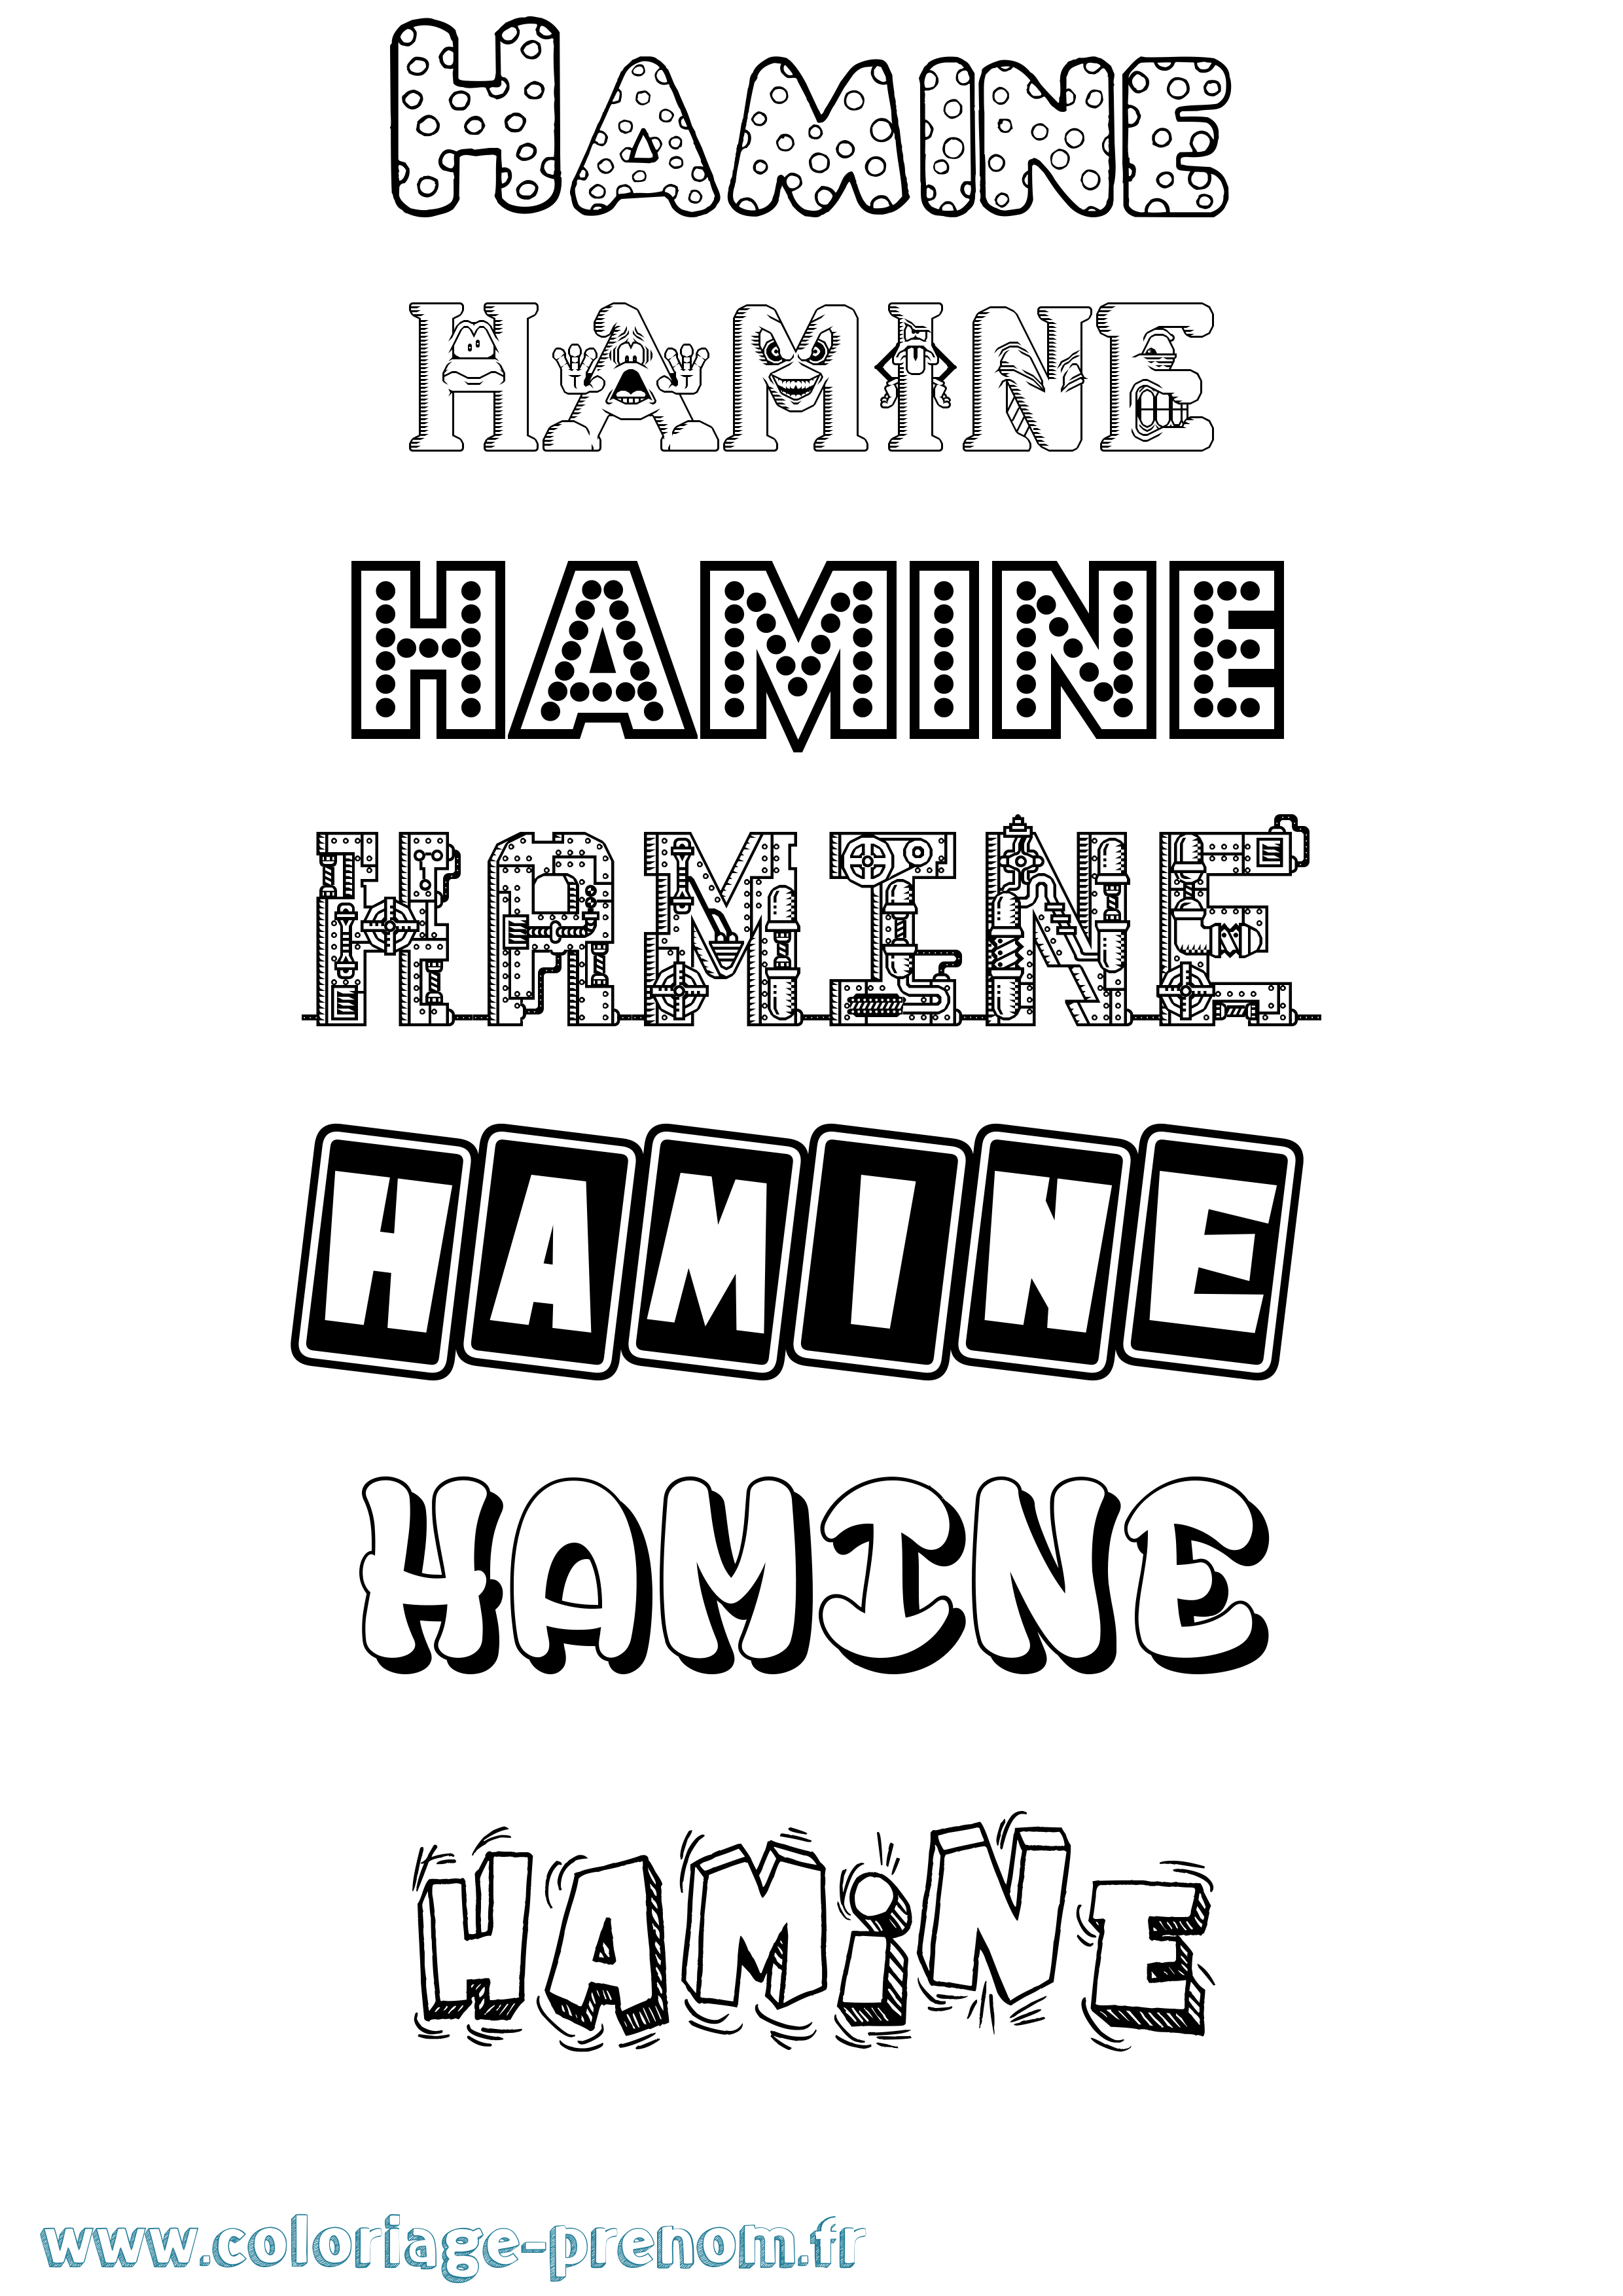 Coloriage prénom Hamine Fun